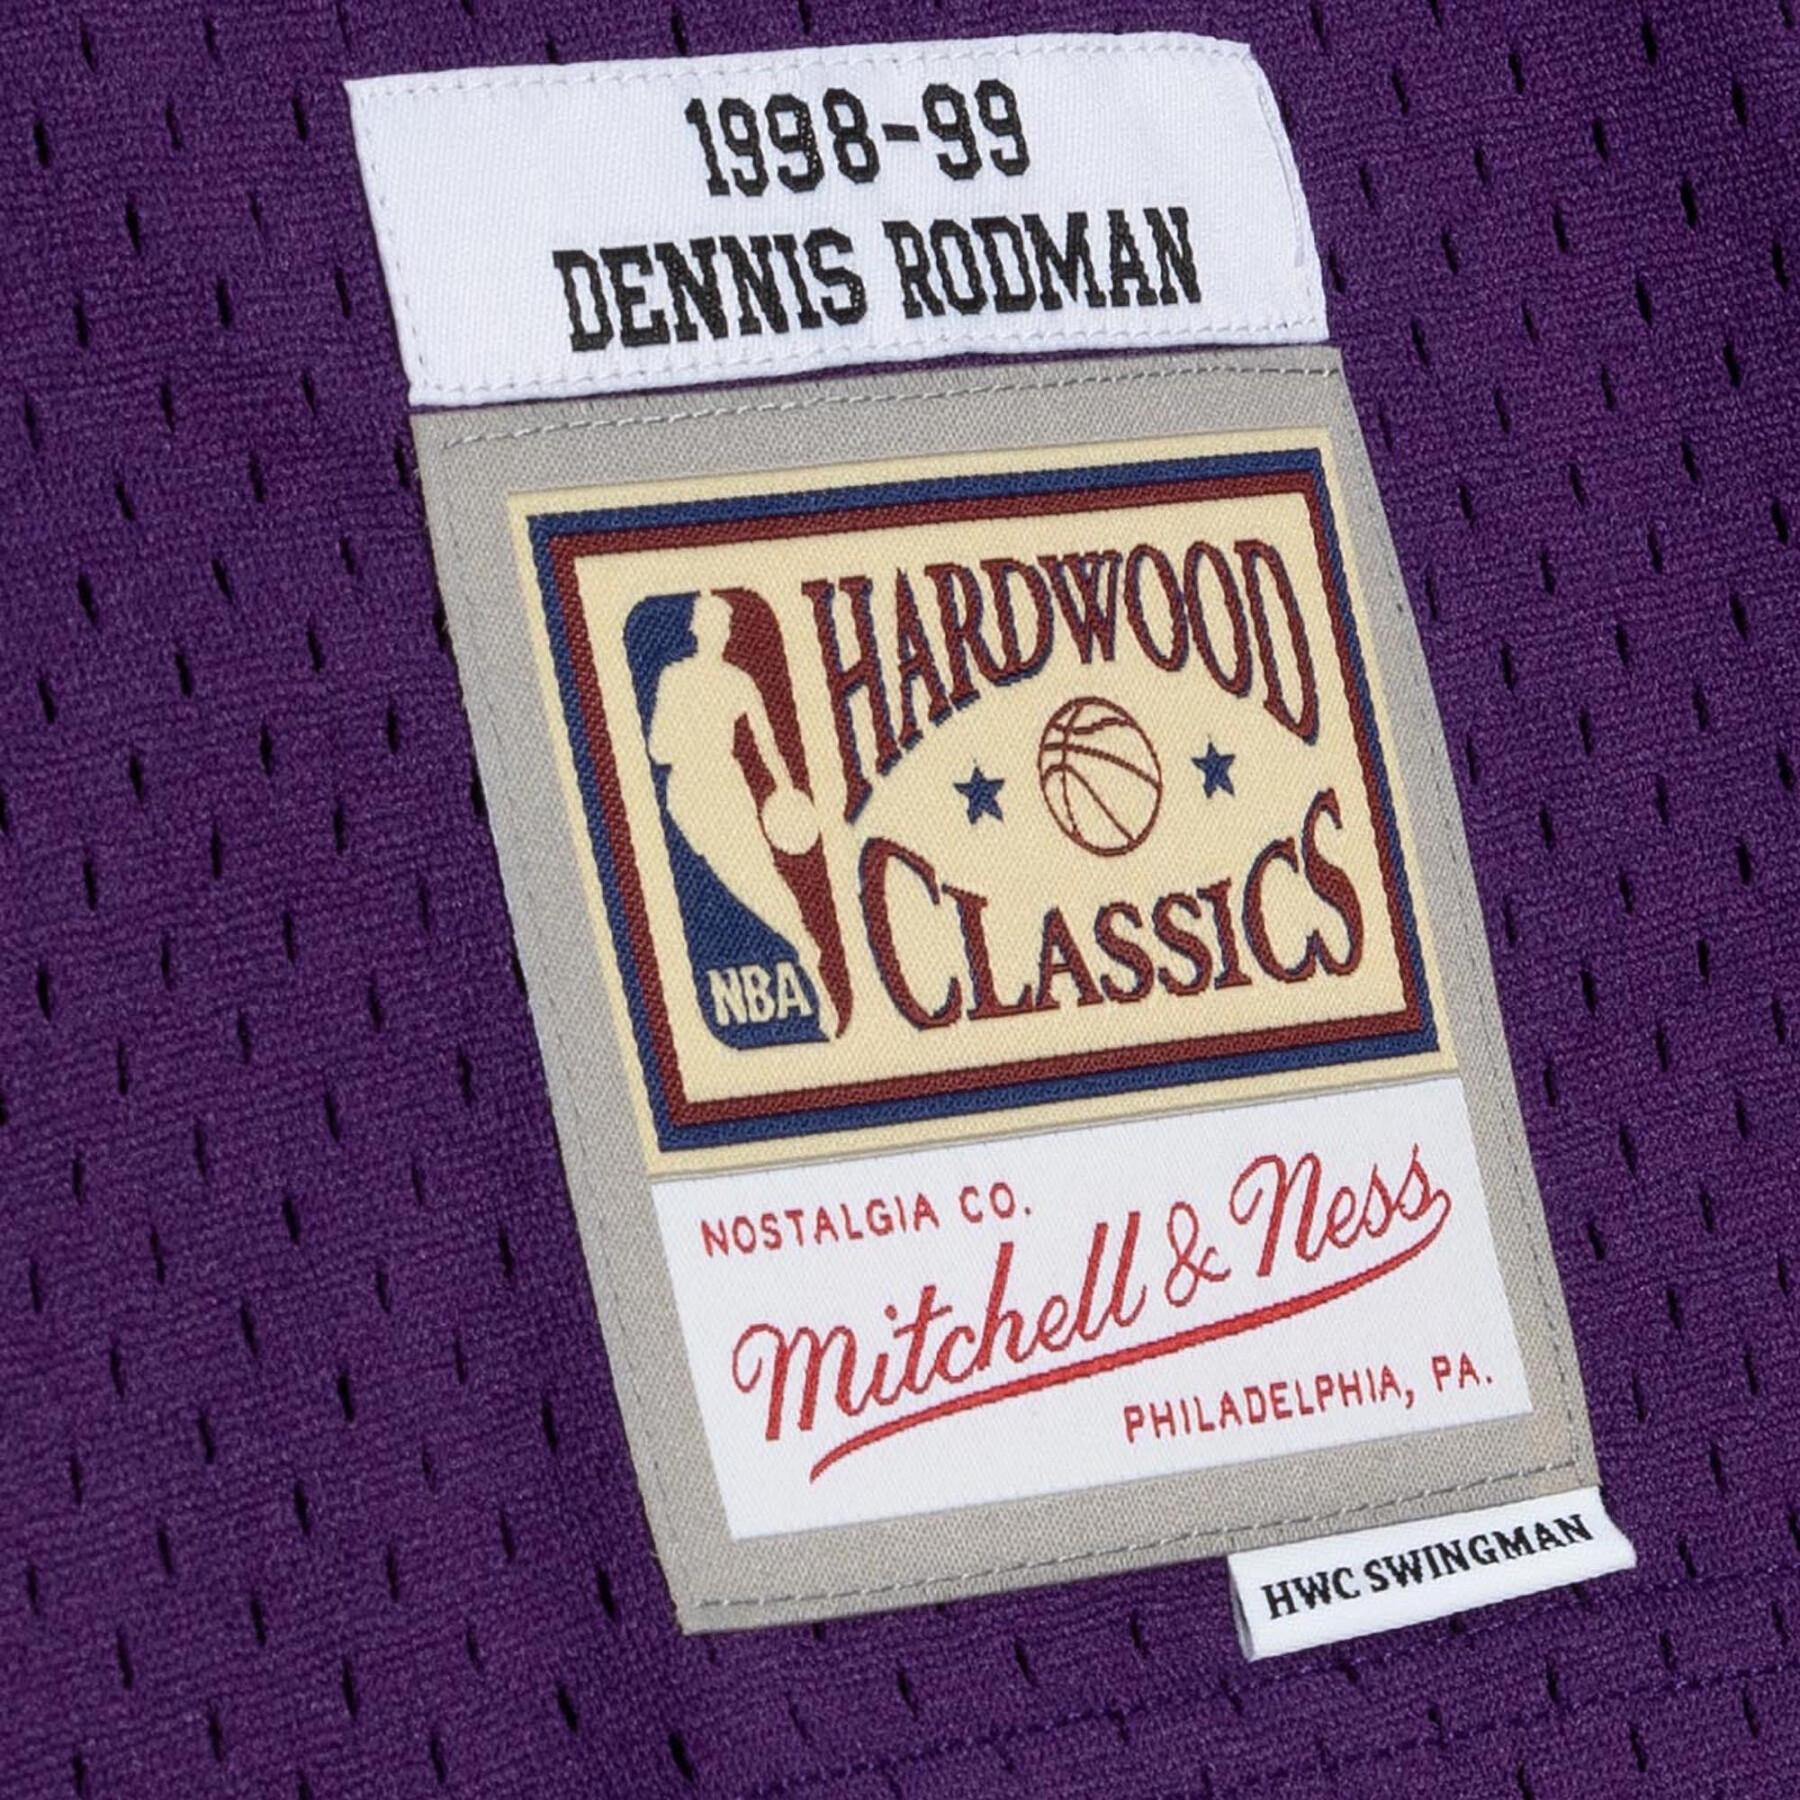 Camisola de estrada de Dennis Rodman dos Lakers 1998/99